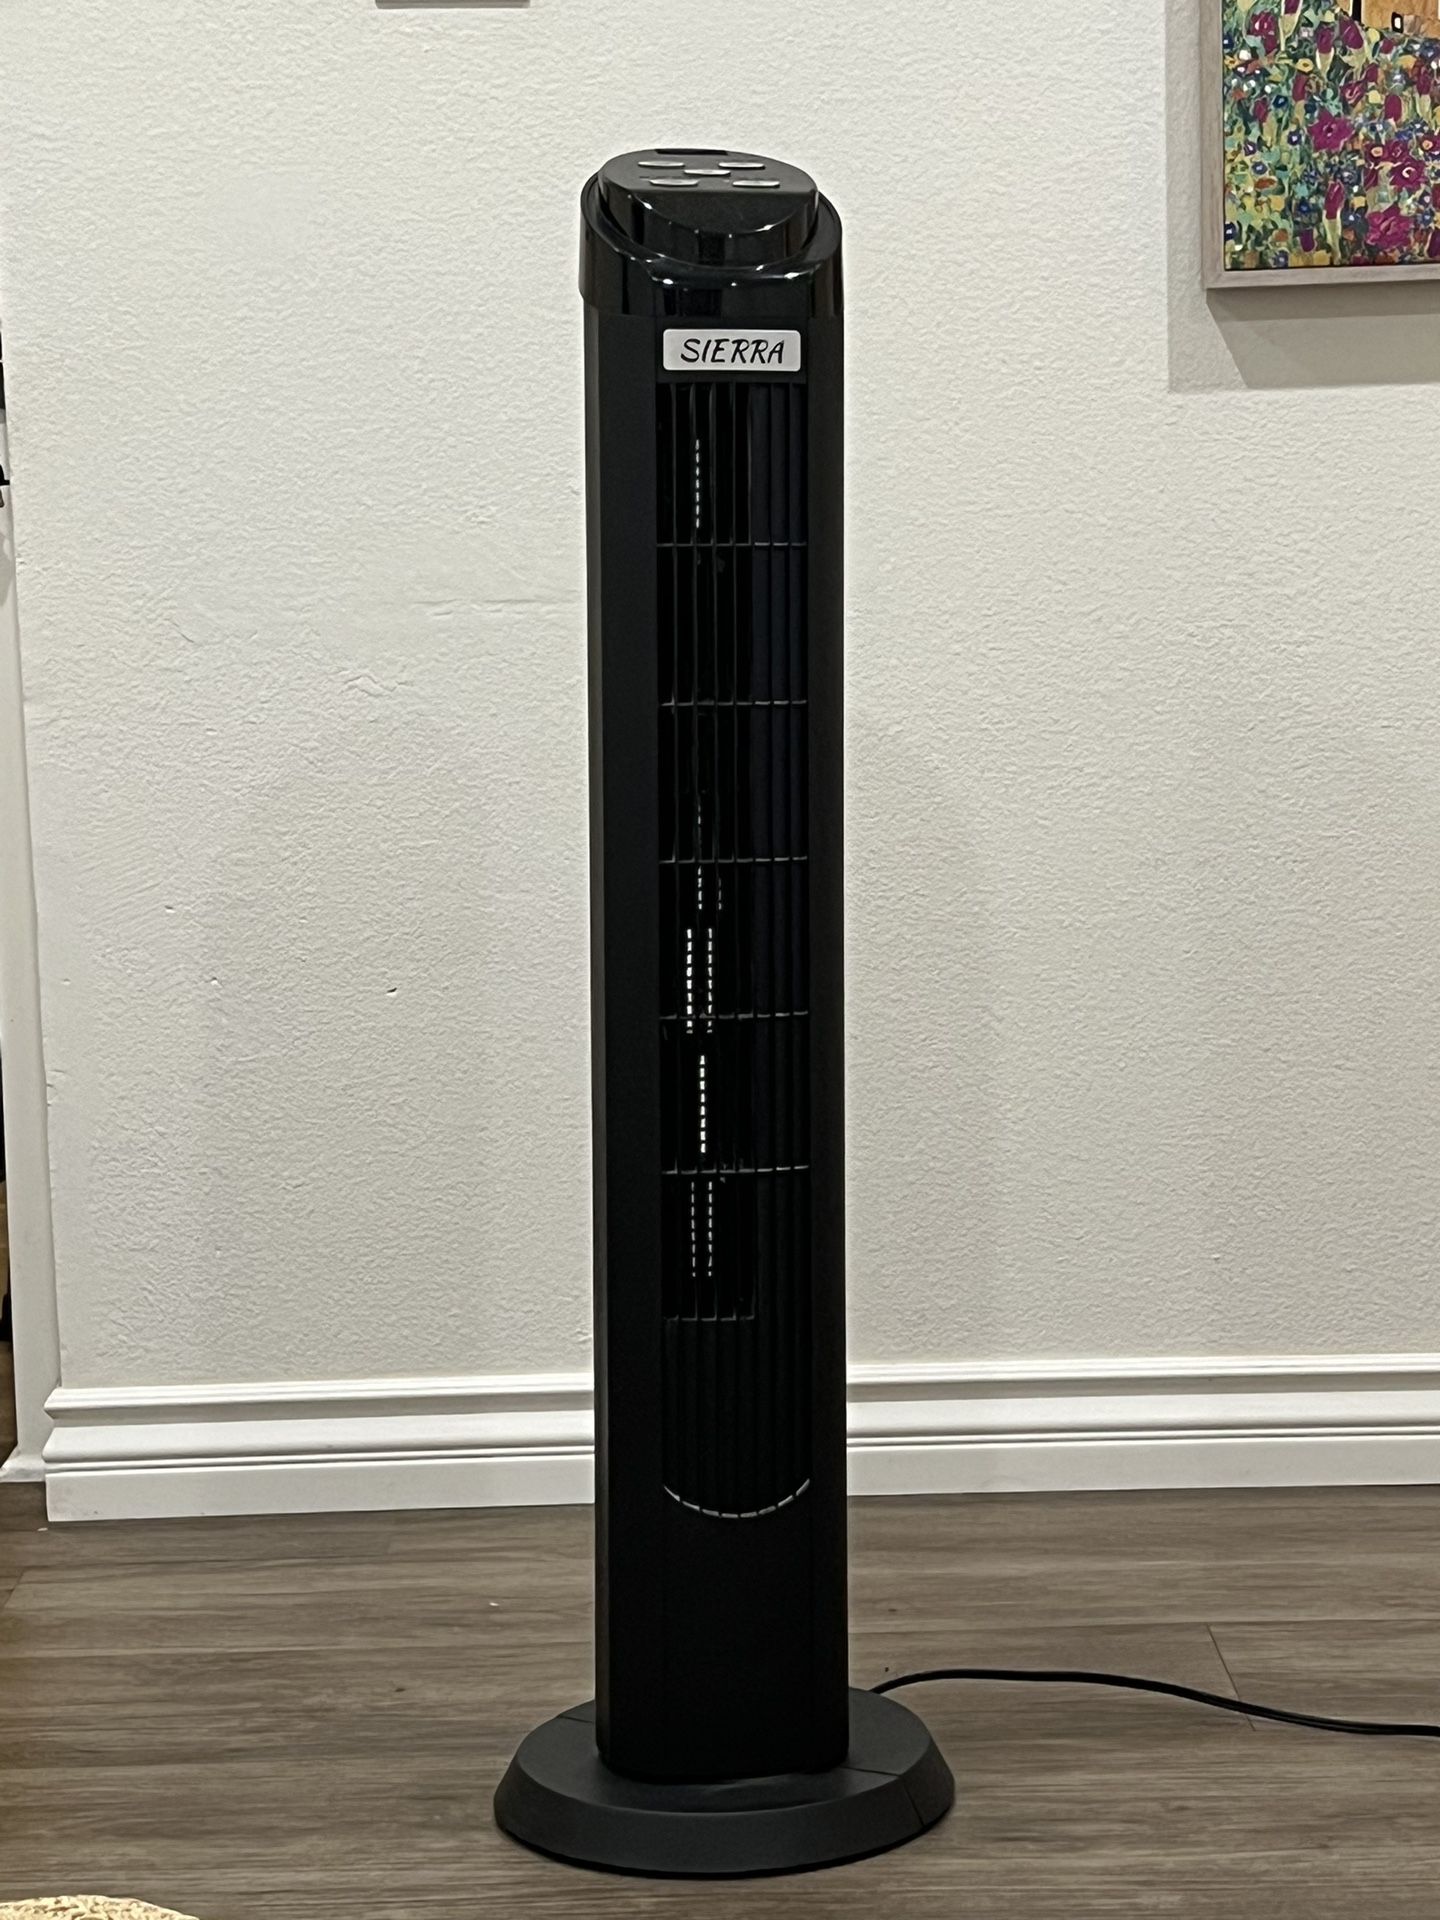 Standing Tower Oscillating Fan - Sierra (black)